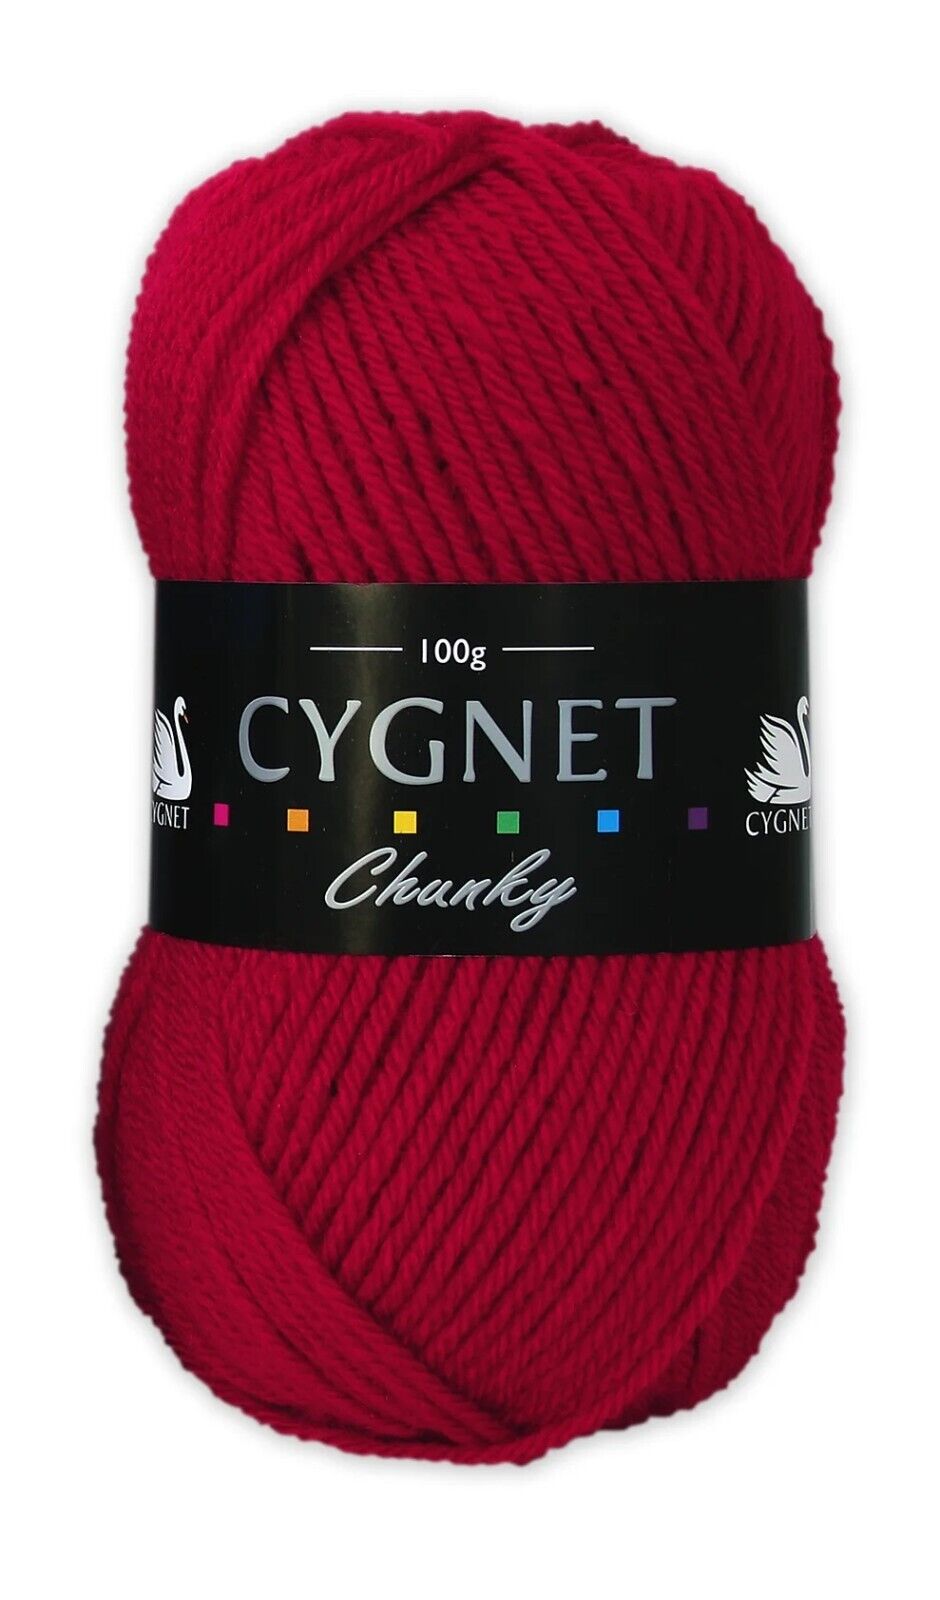 Cygnet CHUNKY Knitting Yarn / Wool - 100g Chunky Knit Ball - Red